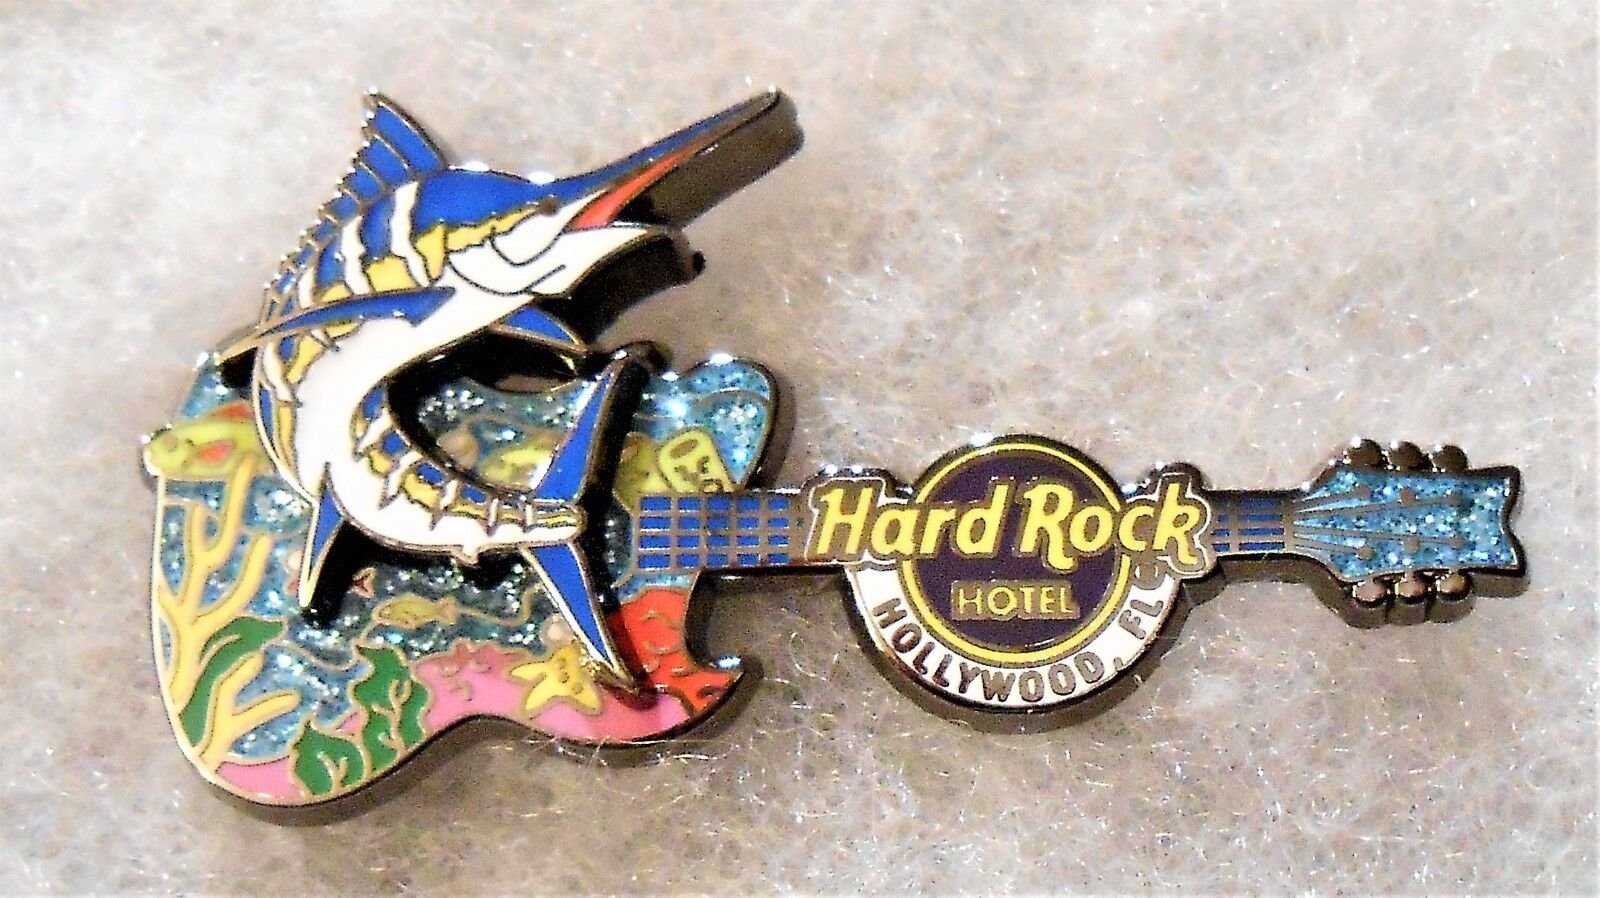 HARD ROCK HOTEL HOLLYWOOD FLORIDA 3D MARLIN FISH GUITAR PIN # 99902